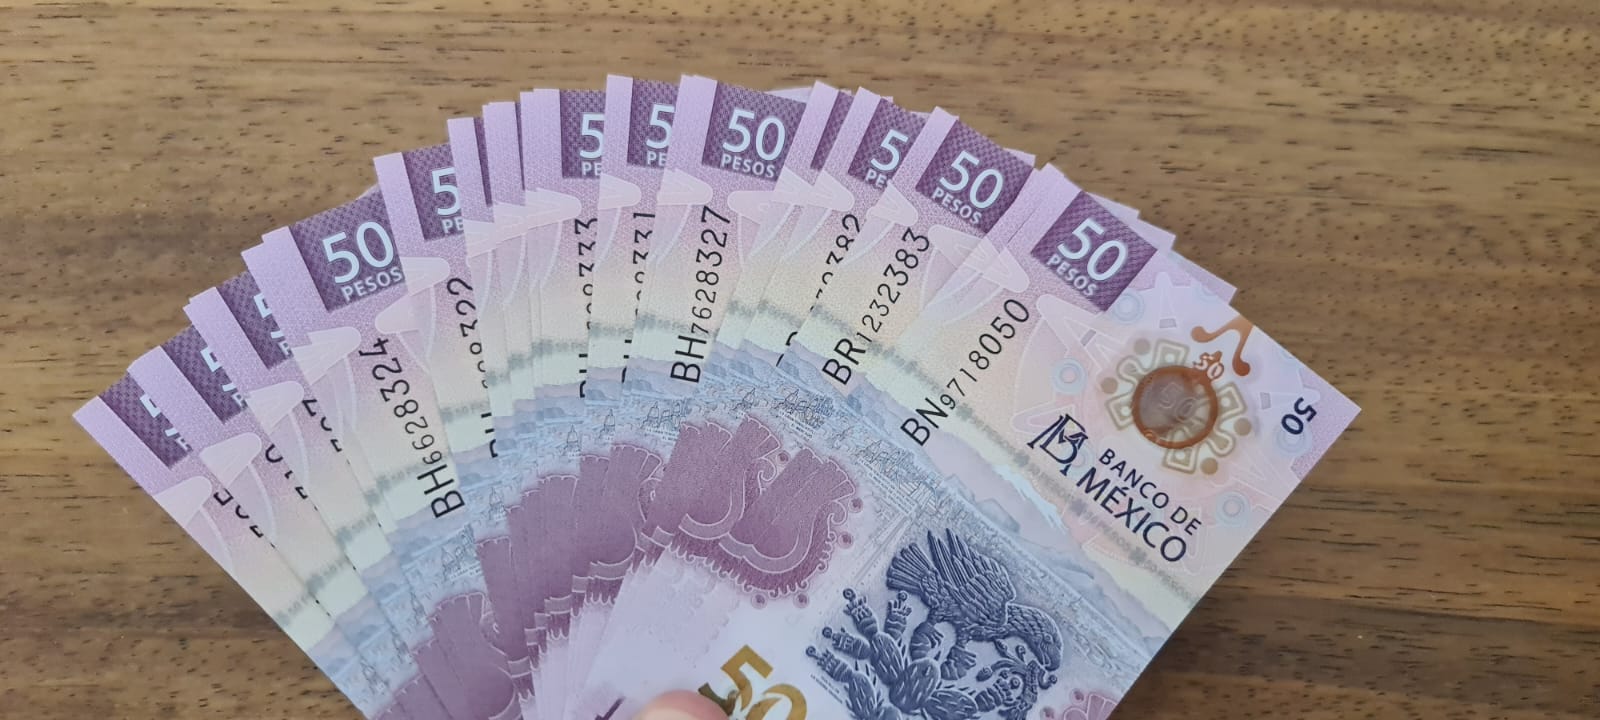 Un fajo de billetes de 50 pesos